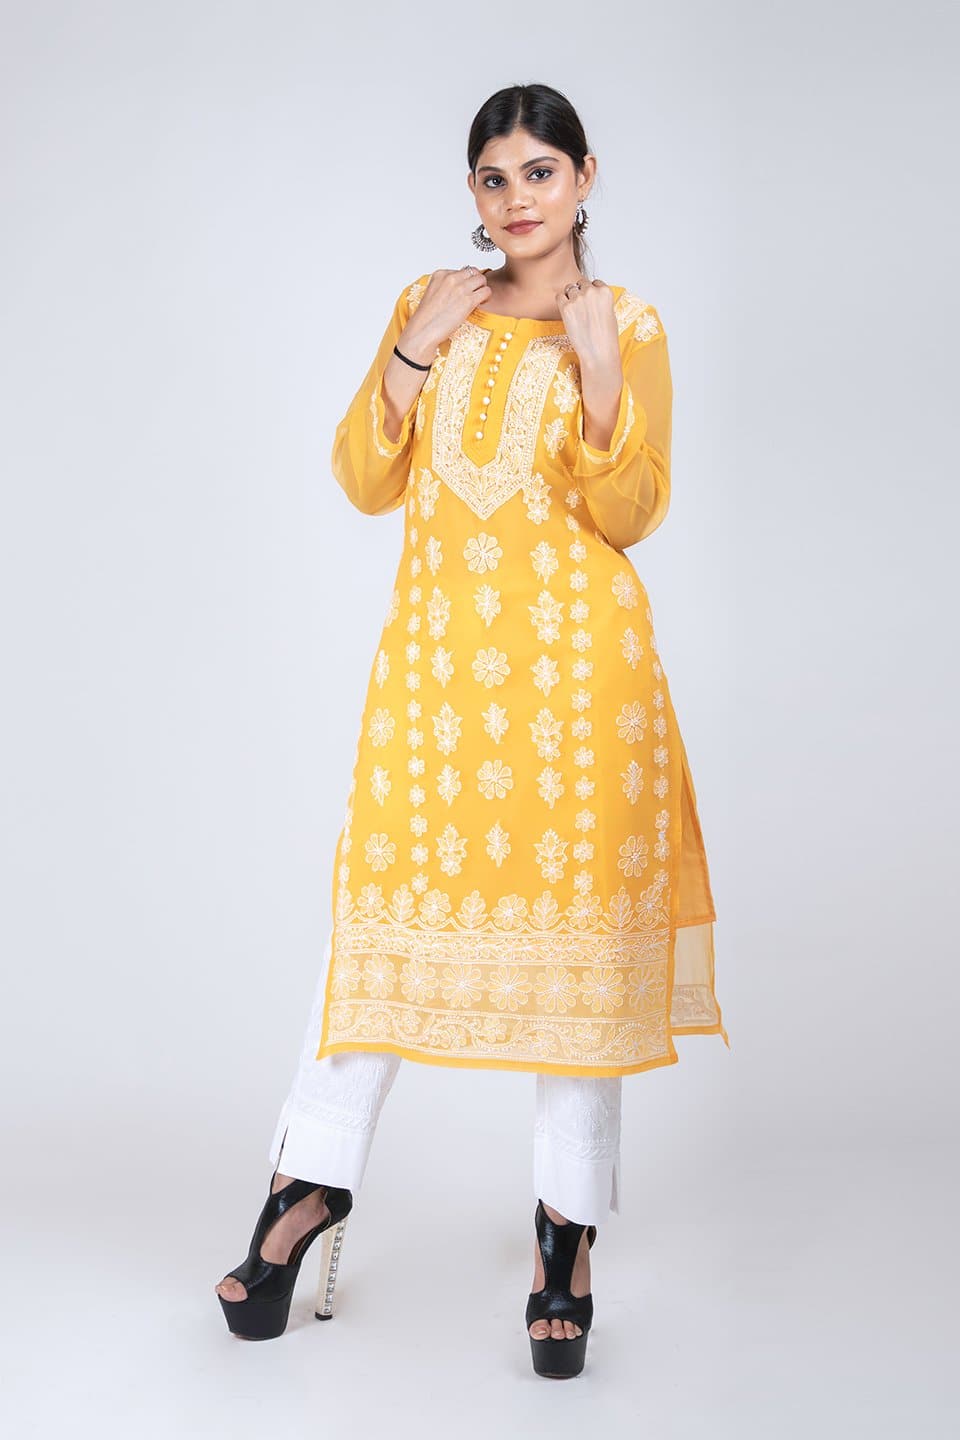 Wlosea Fashion Georgette Chiffon Chikan Embroidery yellow stitched Only  Kurti - Seamore - 4035573